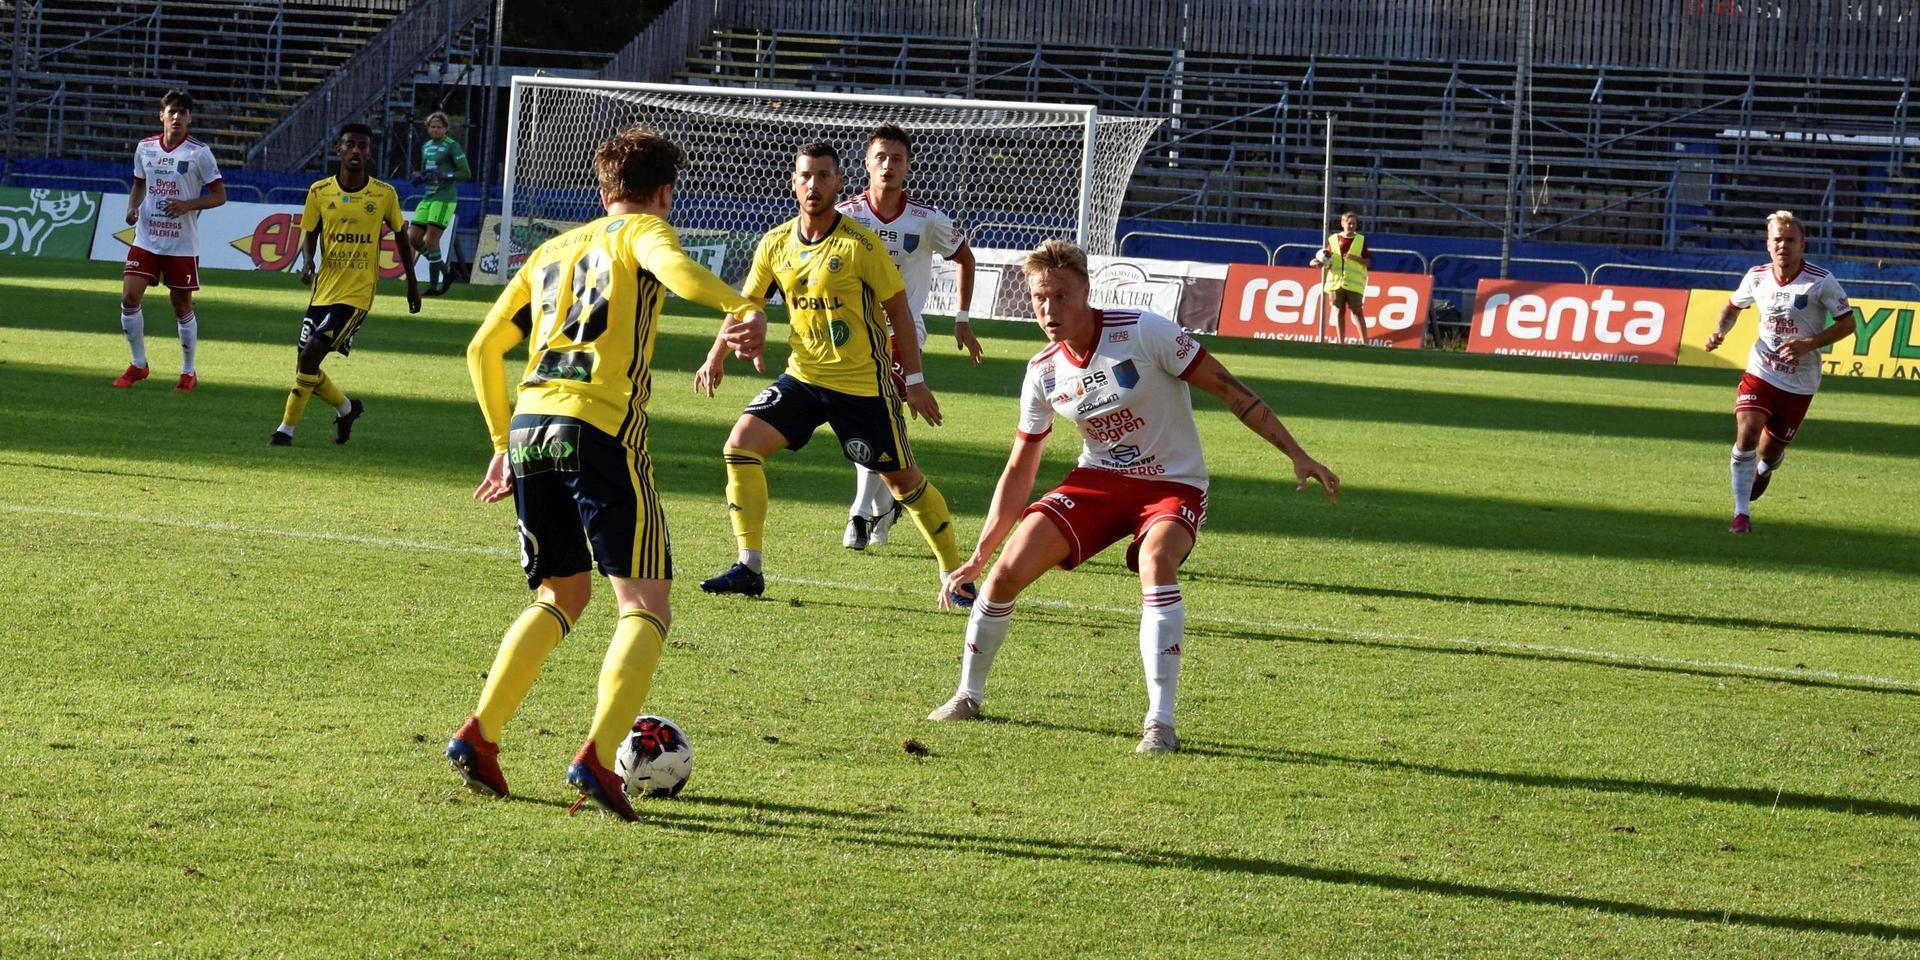 Ängelholm vann med 2-0 i mötet med Halmia på Örjans vall.